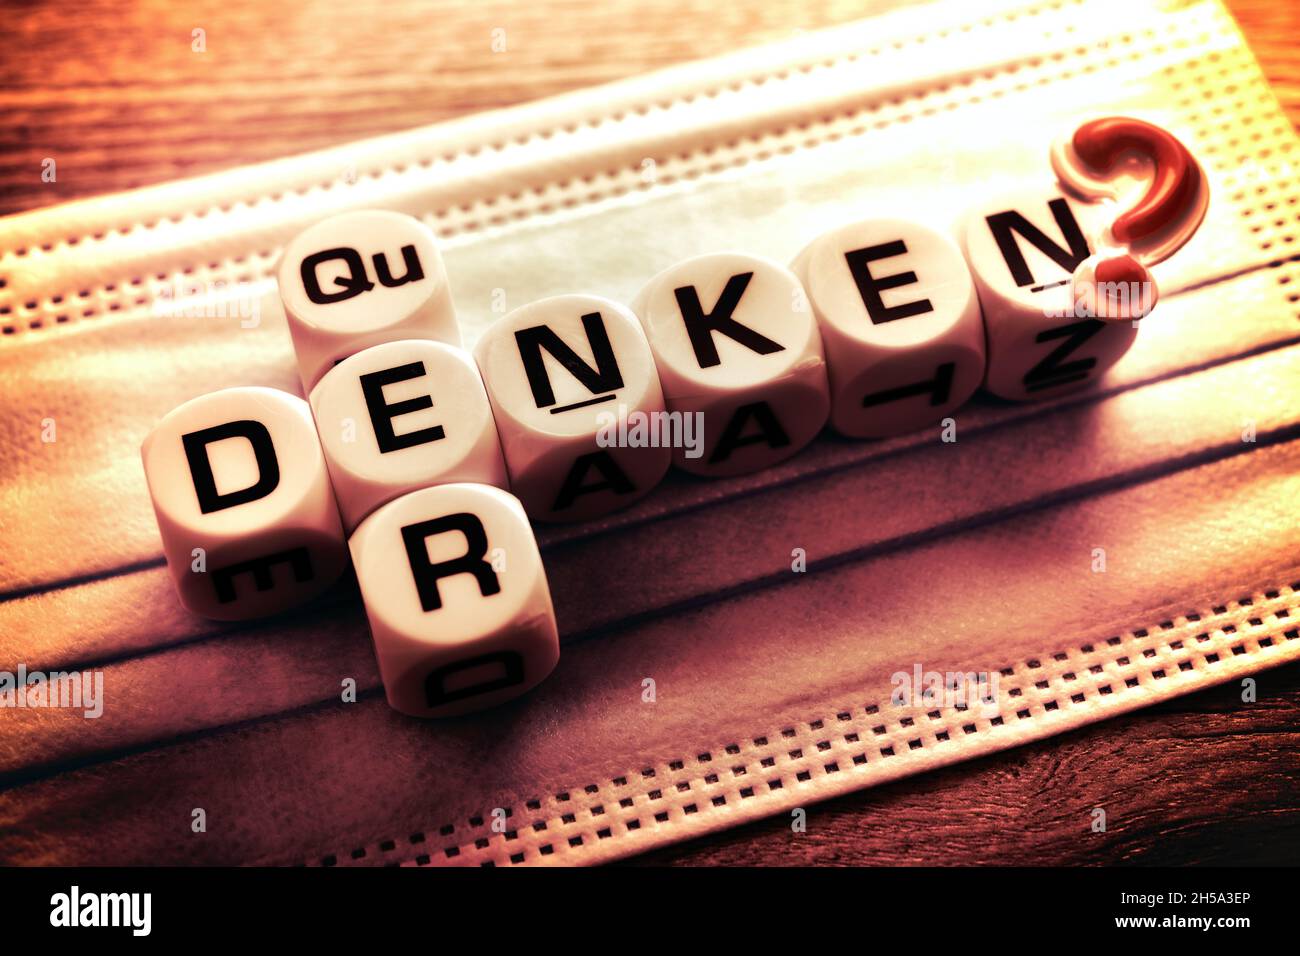 Buchstabenwürfel bilden die Worte 'quer' und 'denken' auf Schutzmaske, Symbolfoto Querdenker Stock Photo